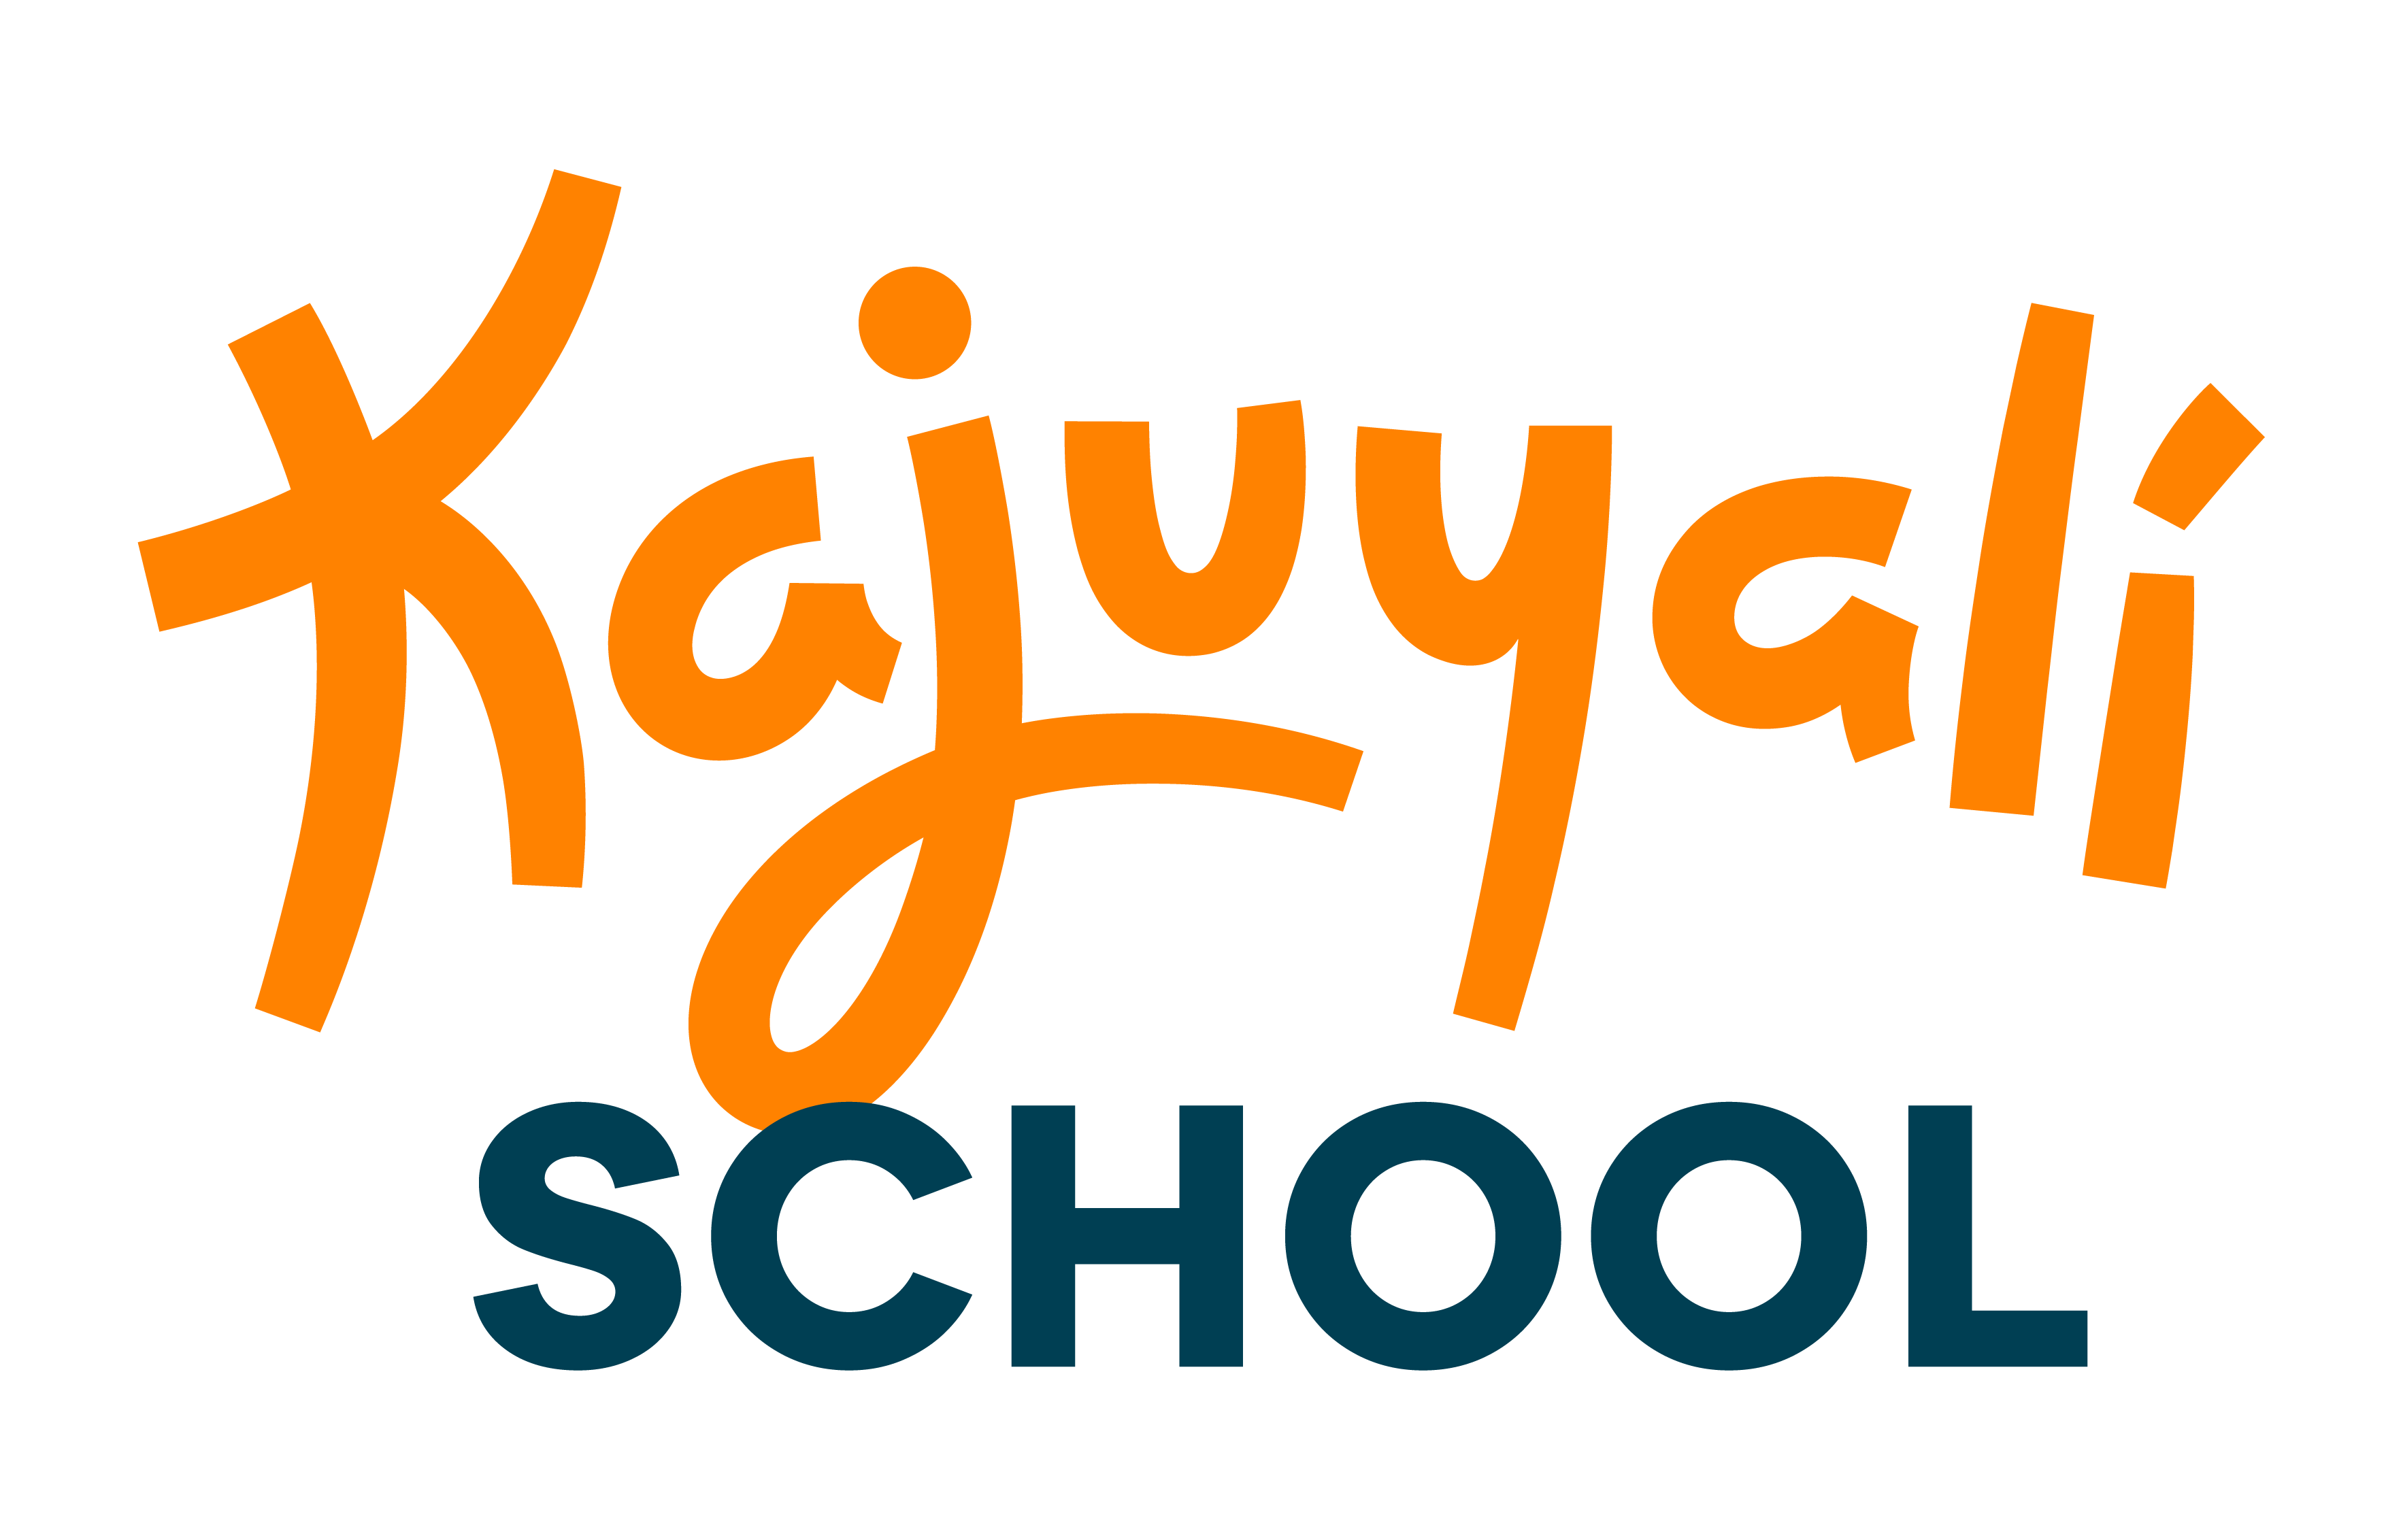 Kajuyalí School